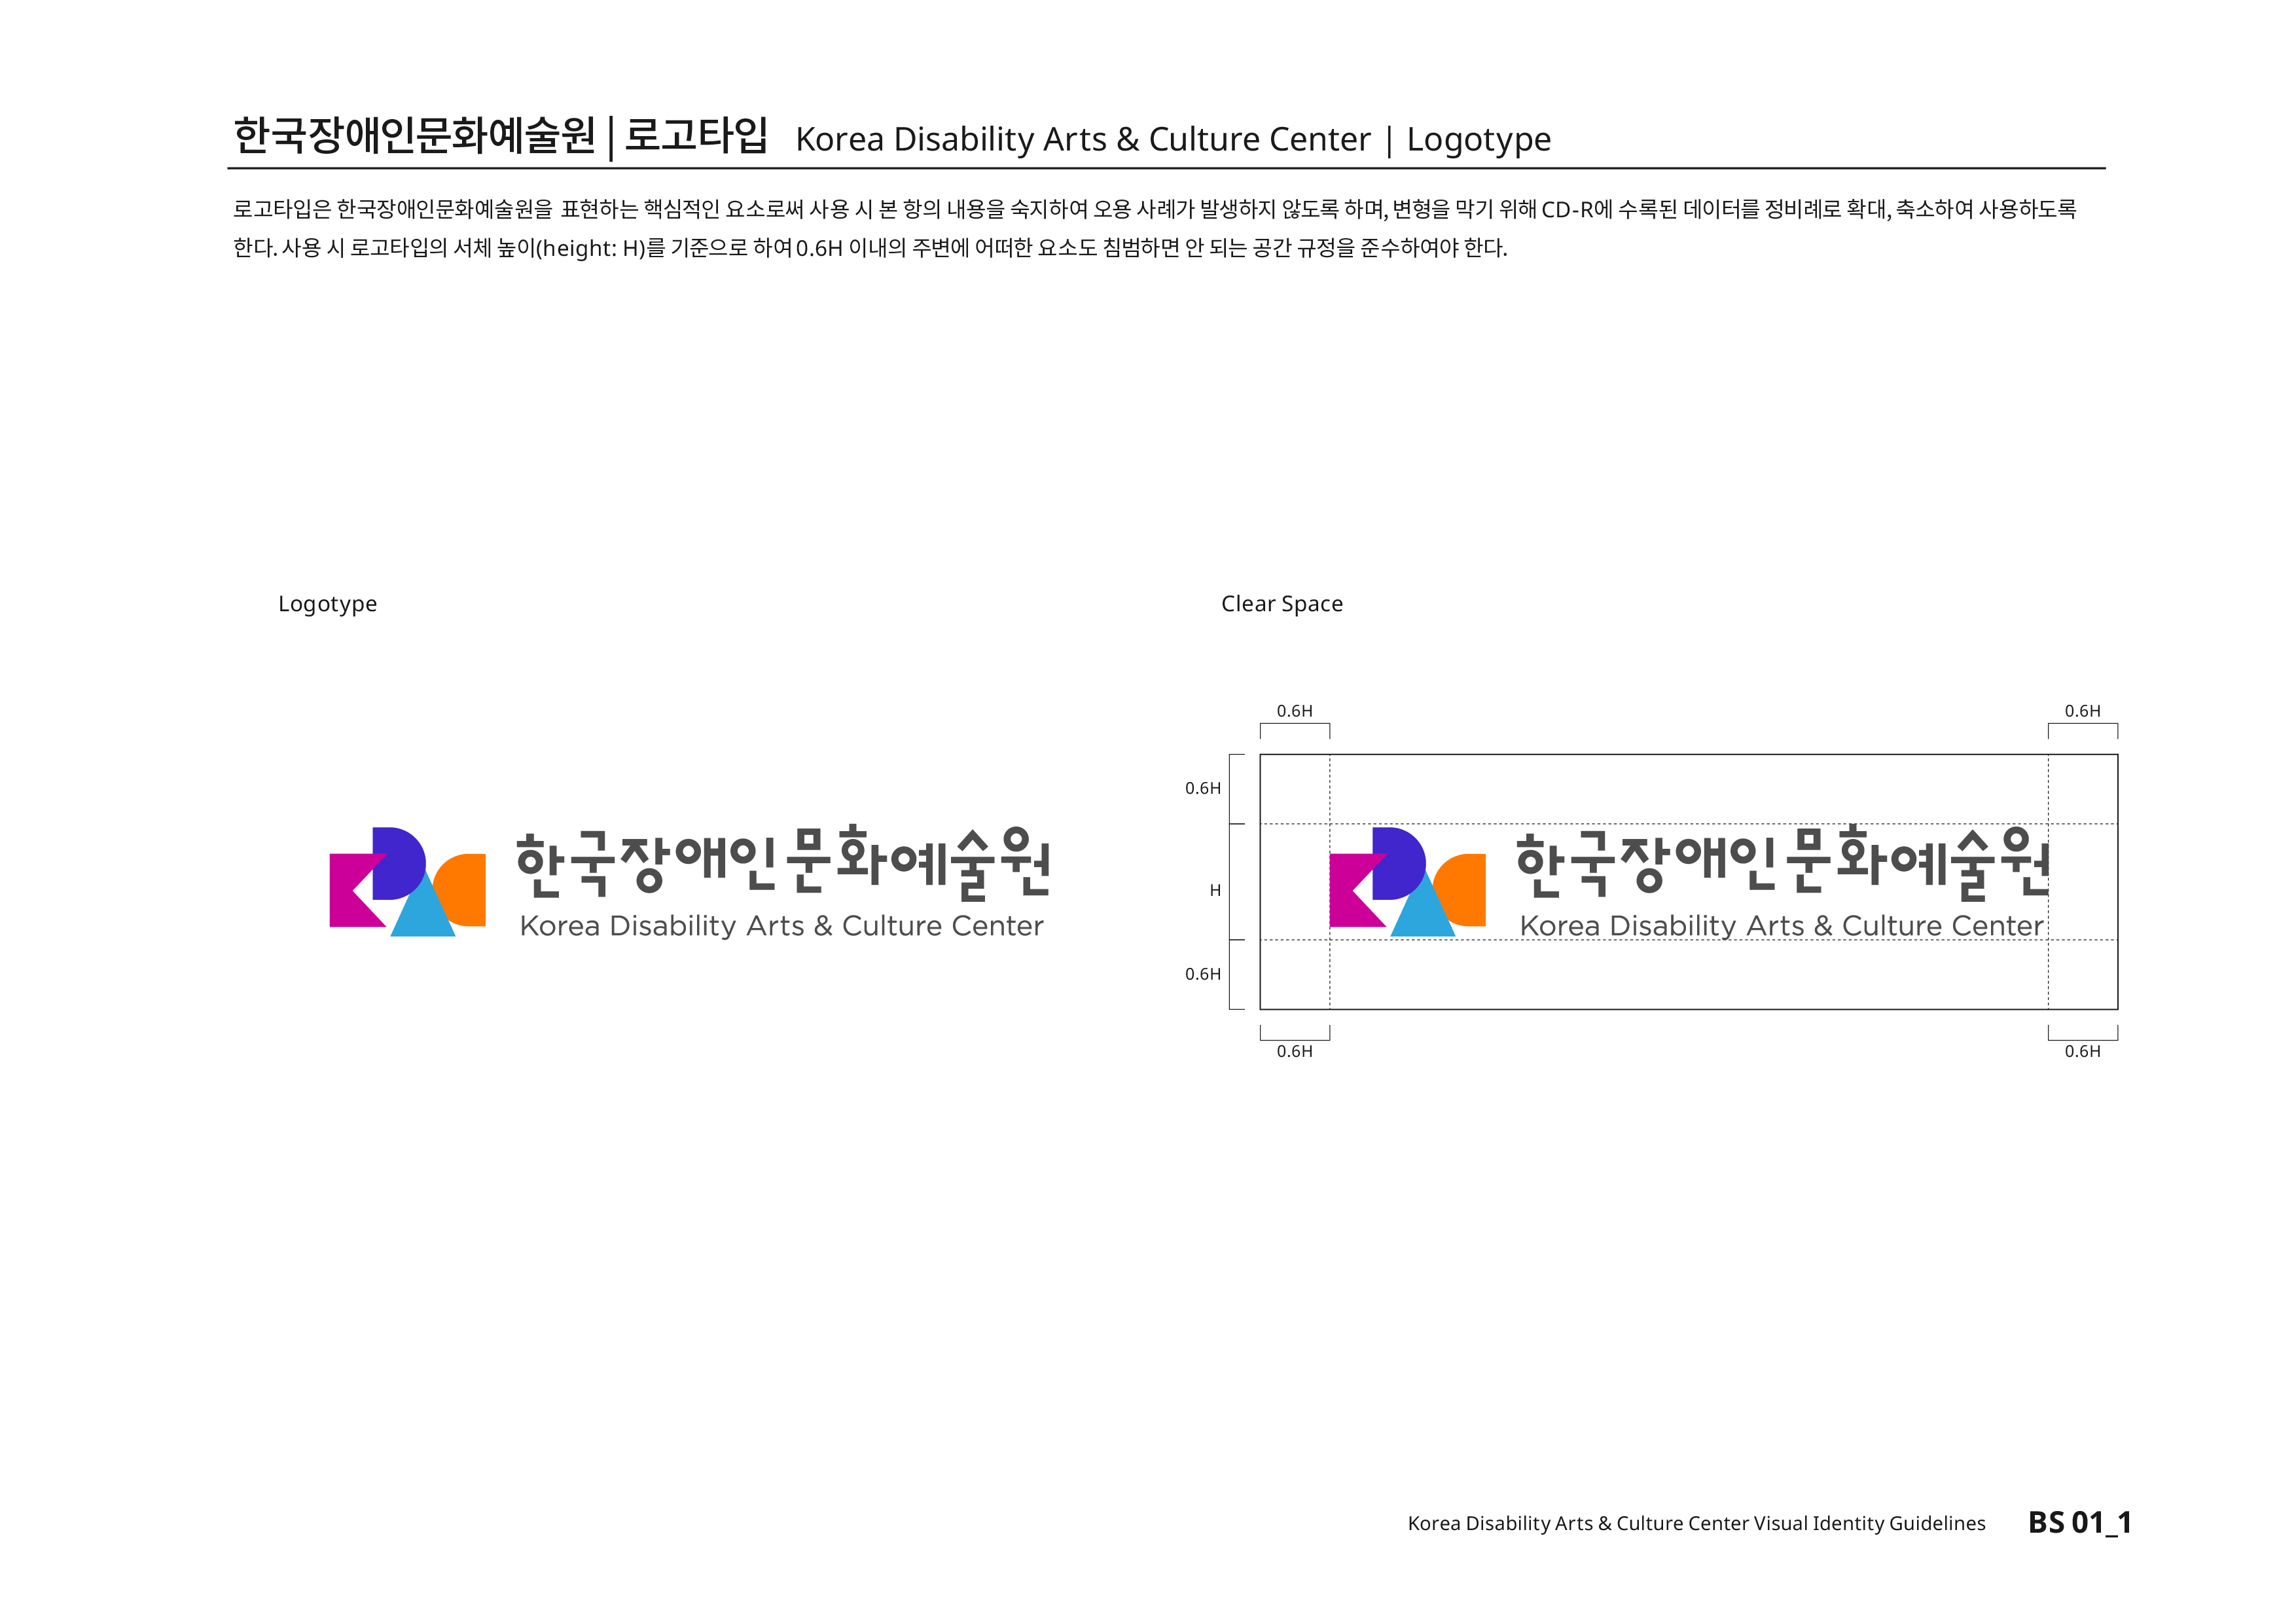 한국장애인문화예술원|로고타입 Korea Disability Arts & Culture Center | Logotype 로고타입은 한국장애인문화예술원을 표현하는 핵심적인 요소로써 사용 시 본 항의 내용을 숙지하여 오용 사례가 발생하지 않도록 하며, 변형을 막기 위해CD-R에 수록된 데이터를 정비례로 확대,축소하여 사용하도록 한다.사용 시 로고타입의 서체높이(height:H)를 기준으로 하여0.6H 이내의 주변에 어떠한 요소도 침범하면 안 된다는 공간 규정을 준수하여야 한다.